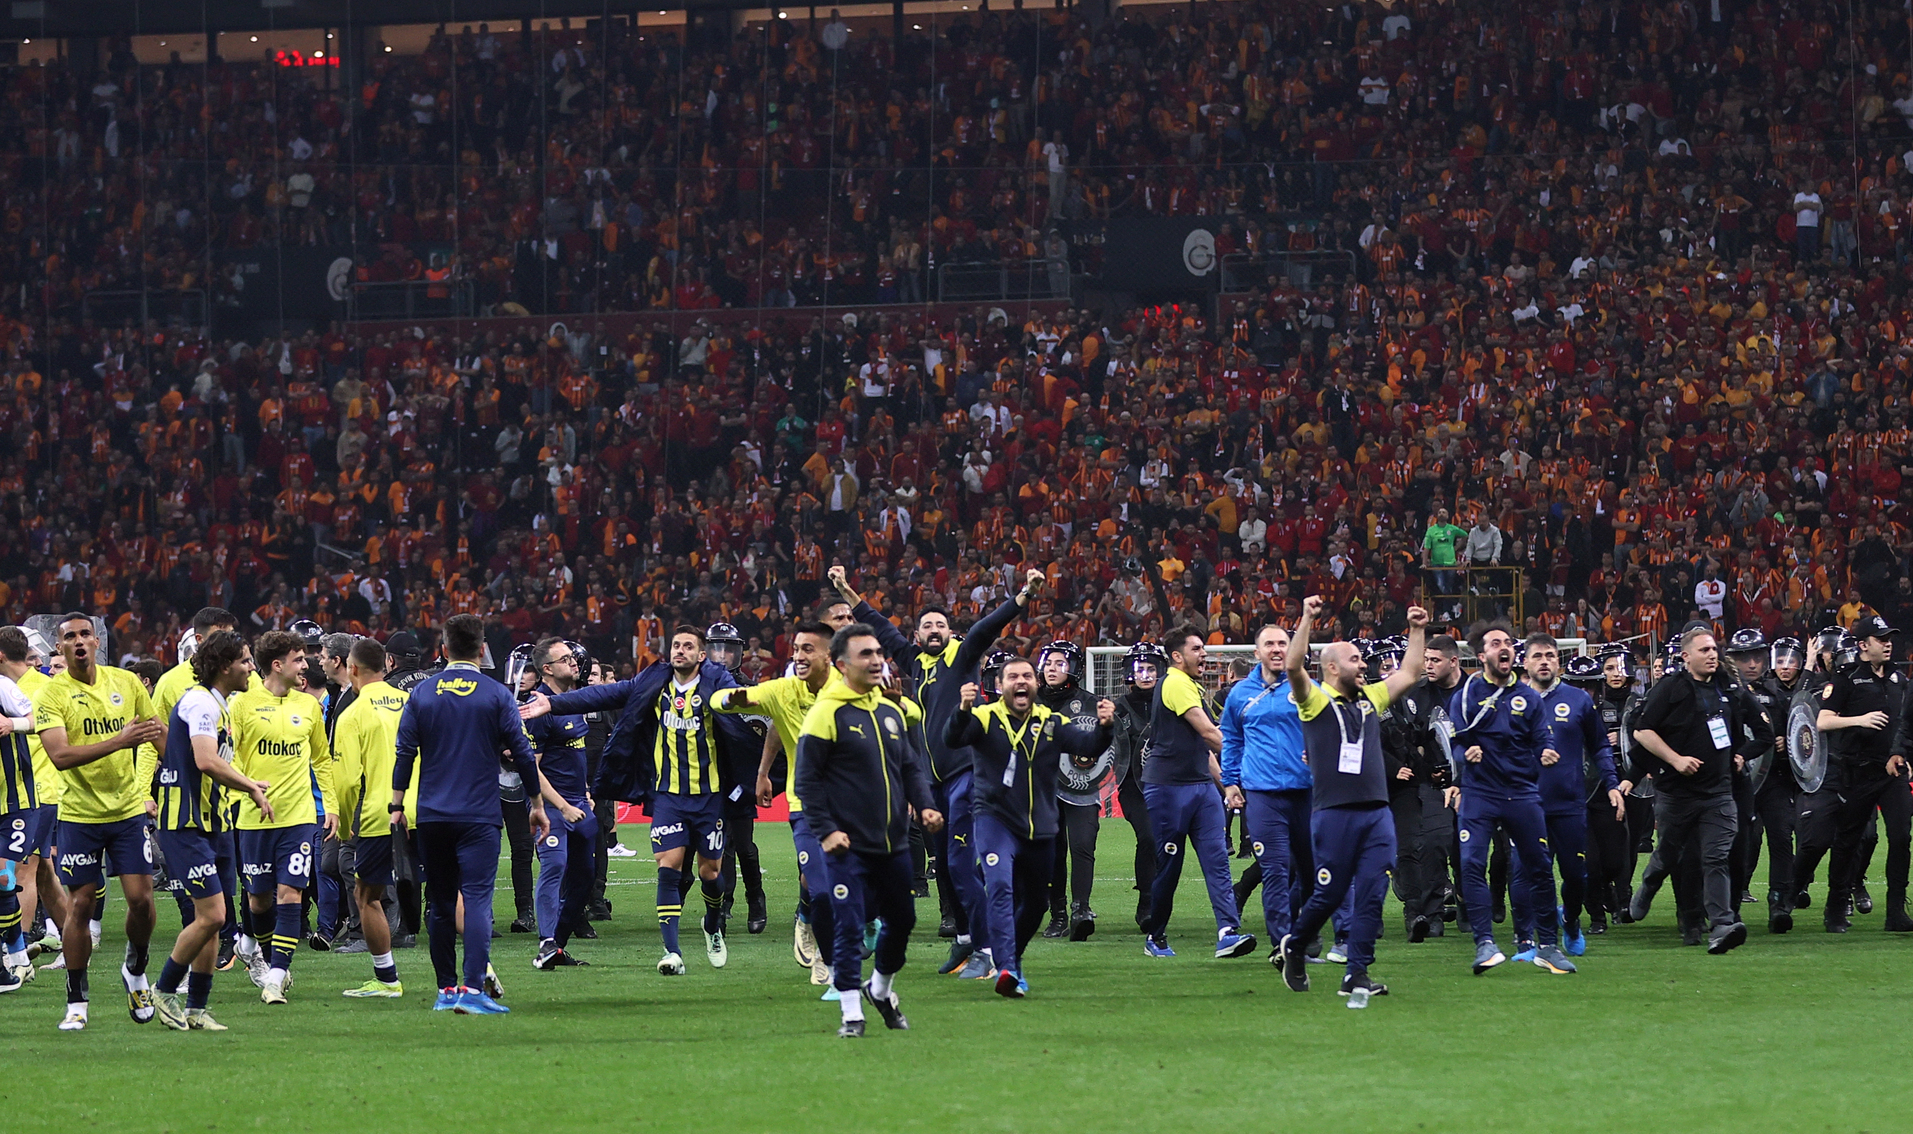  Galatasaray bir sezon boyunca saha dışı algılarla, tehditlerle mücadele ederek bugünlere geldi. Fenerbahçe maçı sahadaki futbolcular için sezonluk emeğin karşılığı olacaktı. Ama ne o isteği gördük ne de hırsı! Rakibin maçın hemen başında 10 kişi kalmış. Sahaya ısınmaya çıktıklarında bile taraftarını tahrik etmek için her şeyi yapmış. Galatasaray takımının hırs yapmayı geçtim kaleyi bulan doğru düzgün şutu bile yok. Maçın son dakikasına kadar takımının yanında olan taraftarlarınızdan da mı utanmadınız? Ligin vasat takımlarını yenerek değil bu maçı kazanarak şampiyon olup, tarih yazılır. Okan Buruk ve oyuncuları net olarak sezonun en kötü futbolunu oynadı. Fenerbahçe hak ettiği bir galibiyet aldı. Bu ciddiyetsizliğin ve kötü oyunun hiçbir şekilde bir açıklaması, bahanesi olamaz. Şampiyon takım böyle oynamaz. Oynarsa da şampiyon olamaz. Galatasaray şampiyonluk kutlamasını Konya’ya bıraktı ama bu maçta finali yaşatmamak büyük ayıp olarak tarihe geçti. (Alper Mert | Korkusuz)